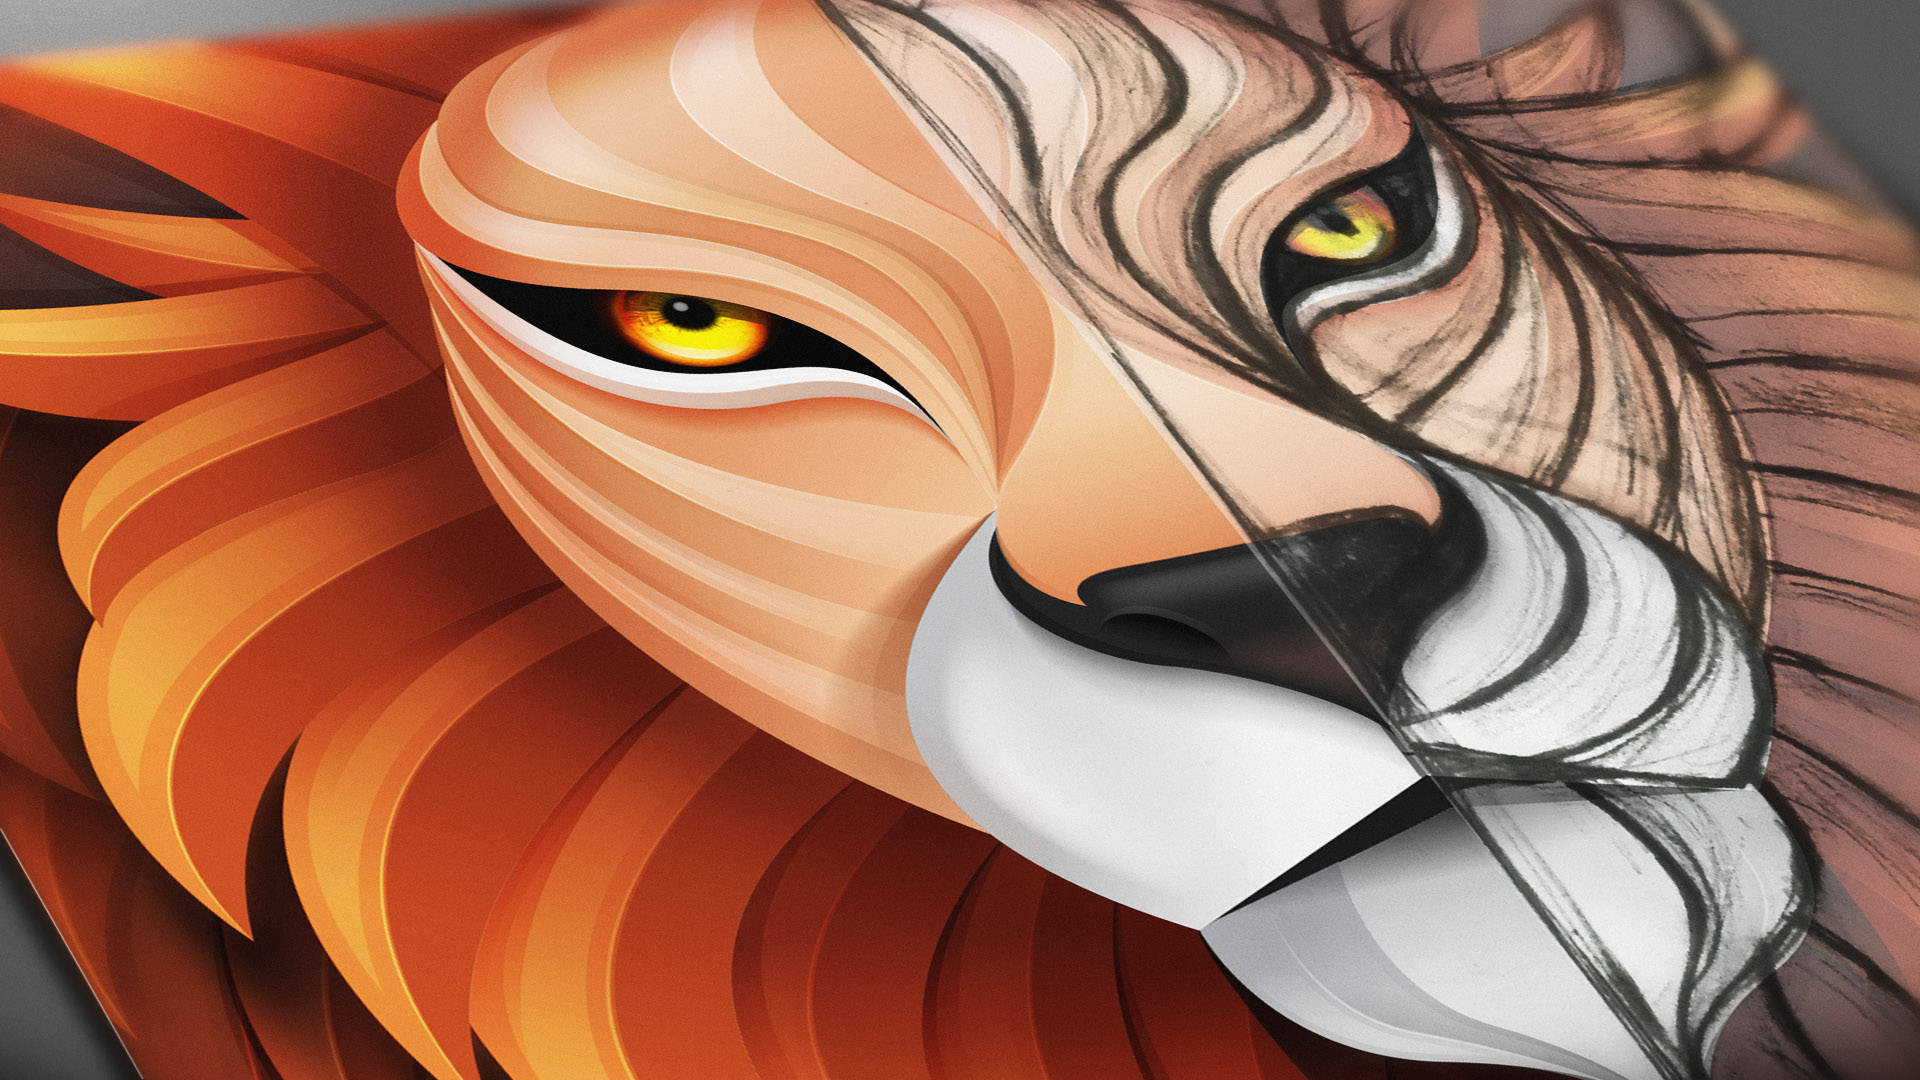 Lion Head Artwork Background